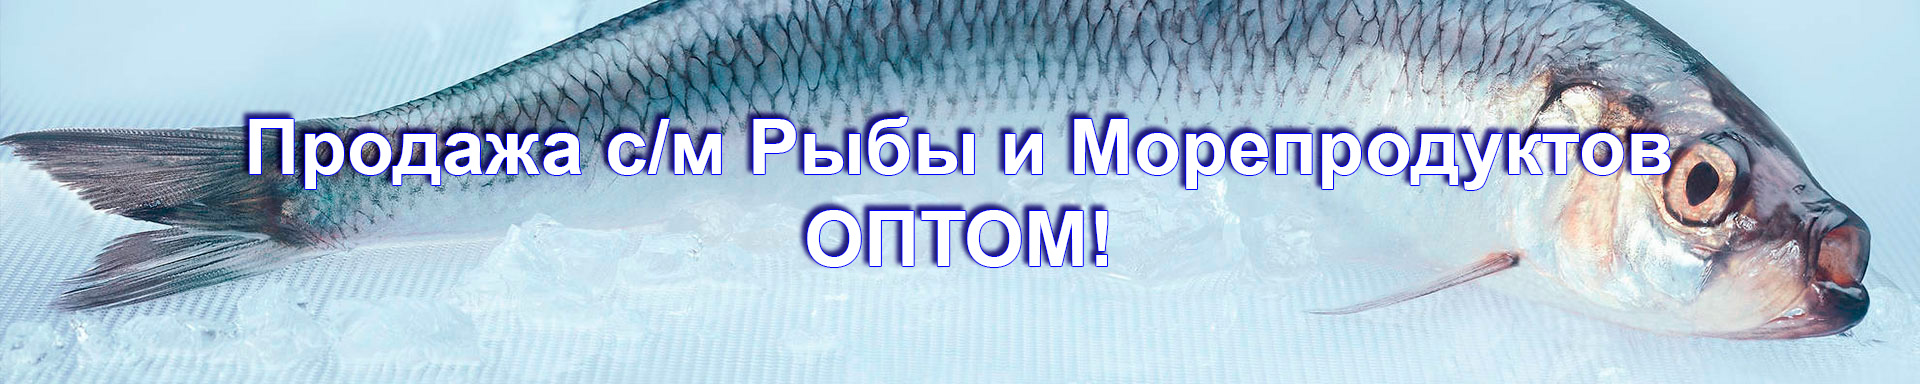 Продажа рыбы и морепродуктов оптом!